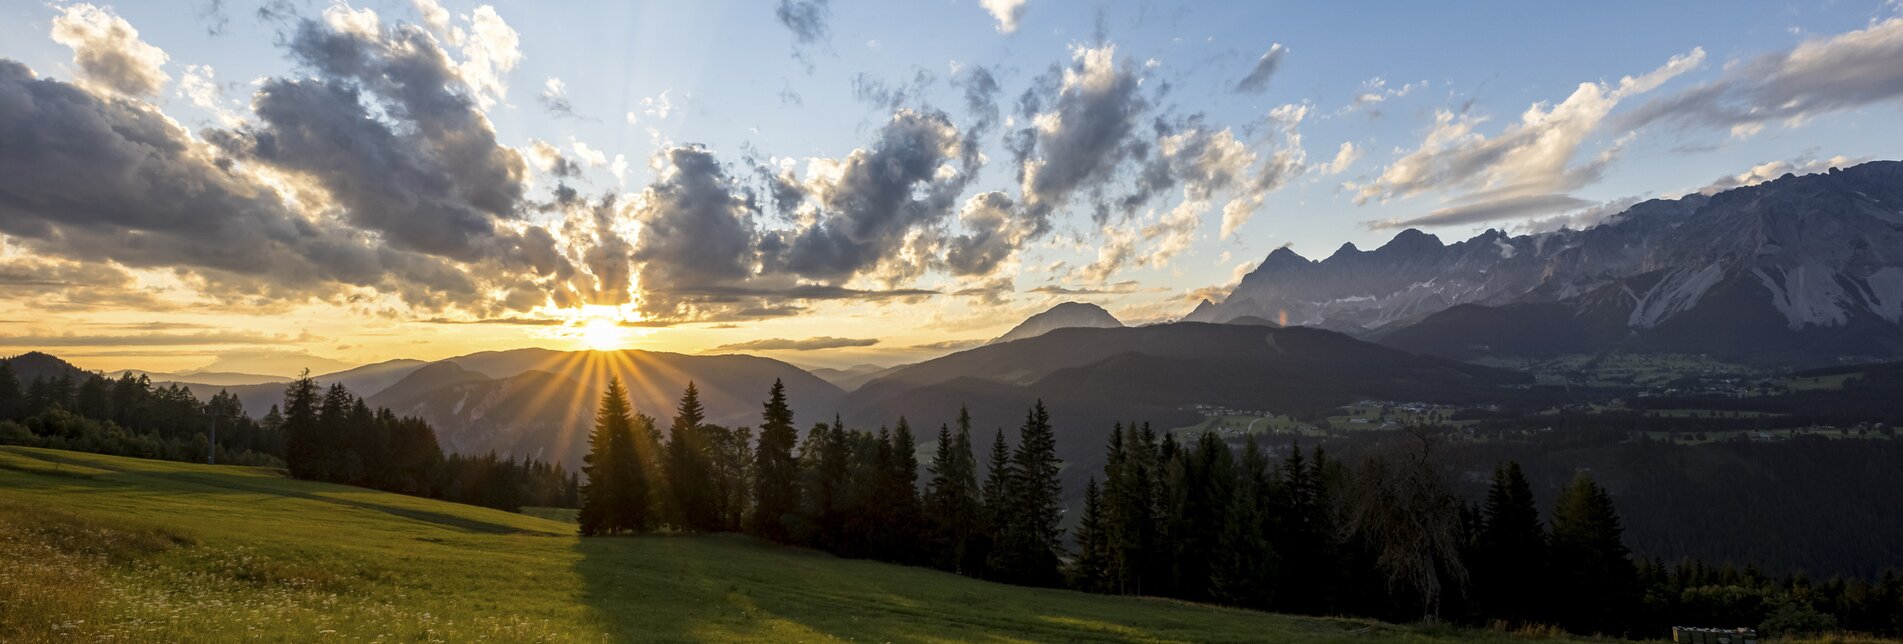 Sonnenuntergang mit Dachstein-Gebirge | © Steiermark Tourismus | photo-austria.at